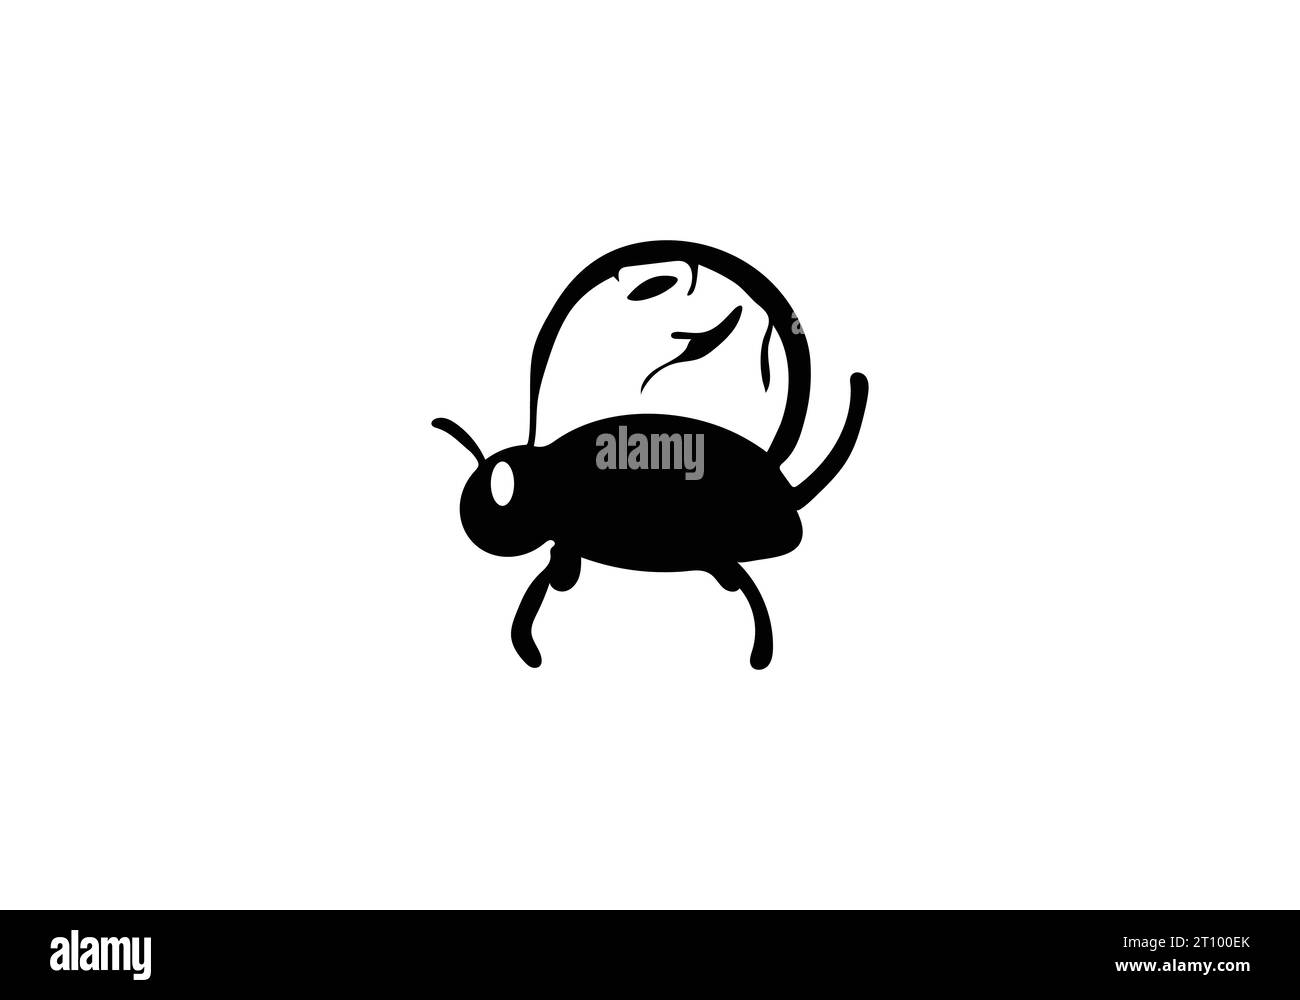 Neues minimalistisches Design für die Illustration von Assassin Bug Stock Vektor